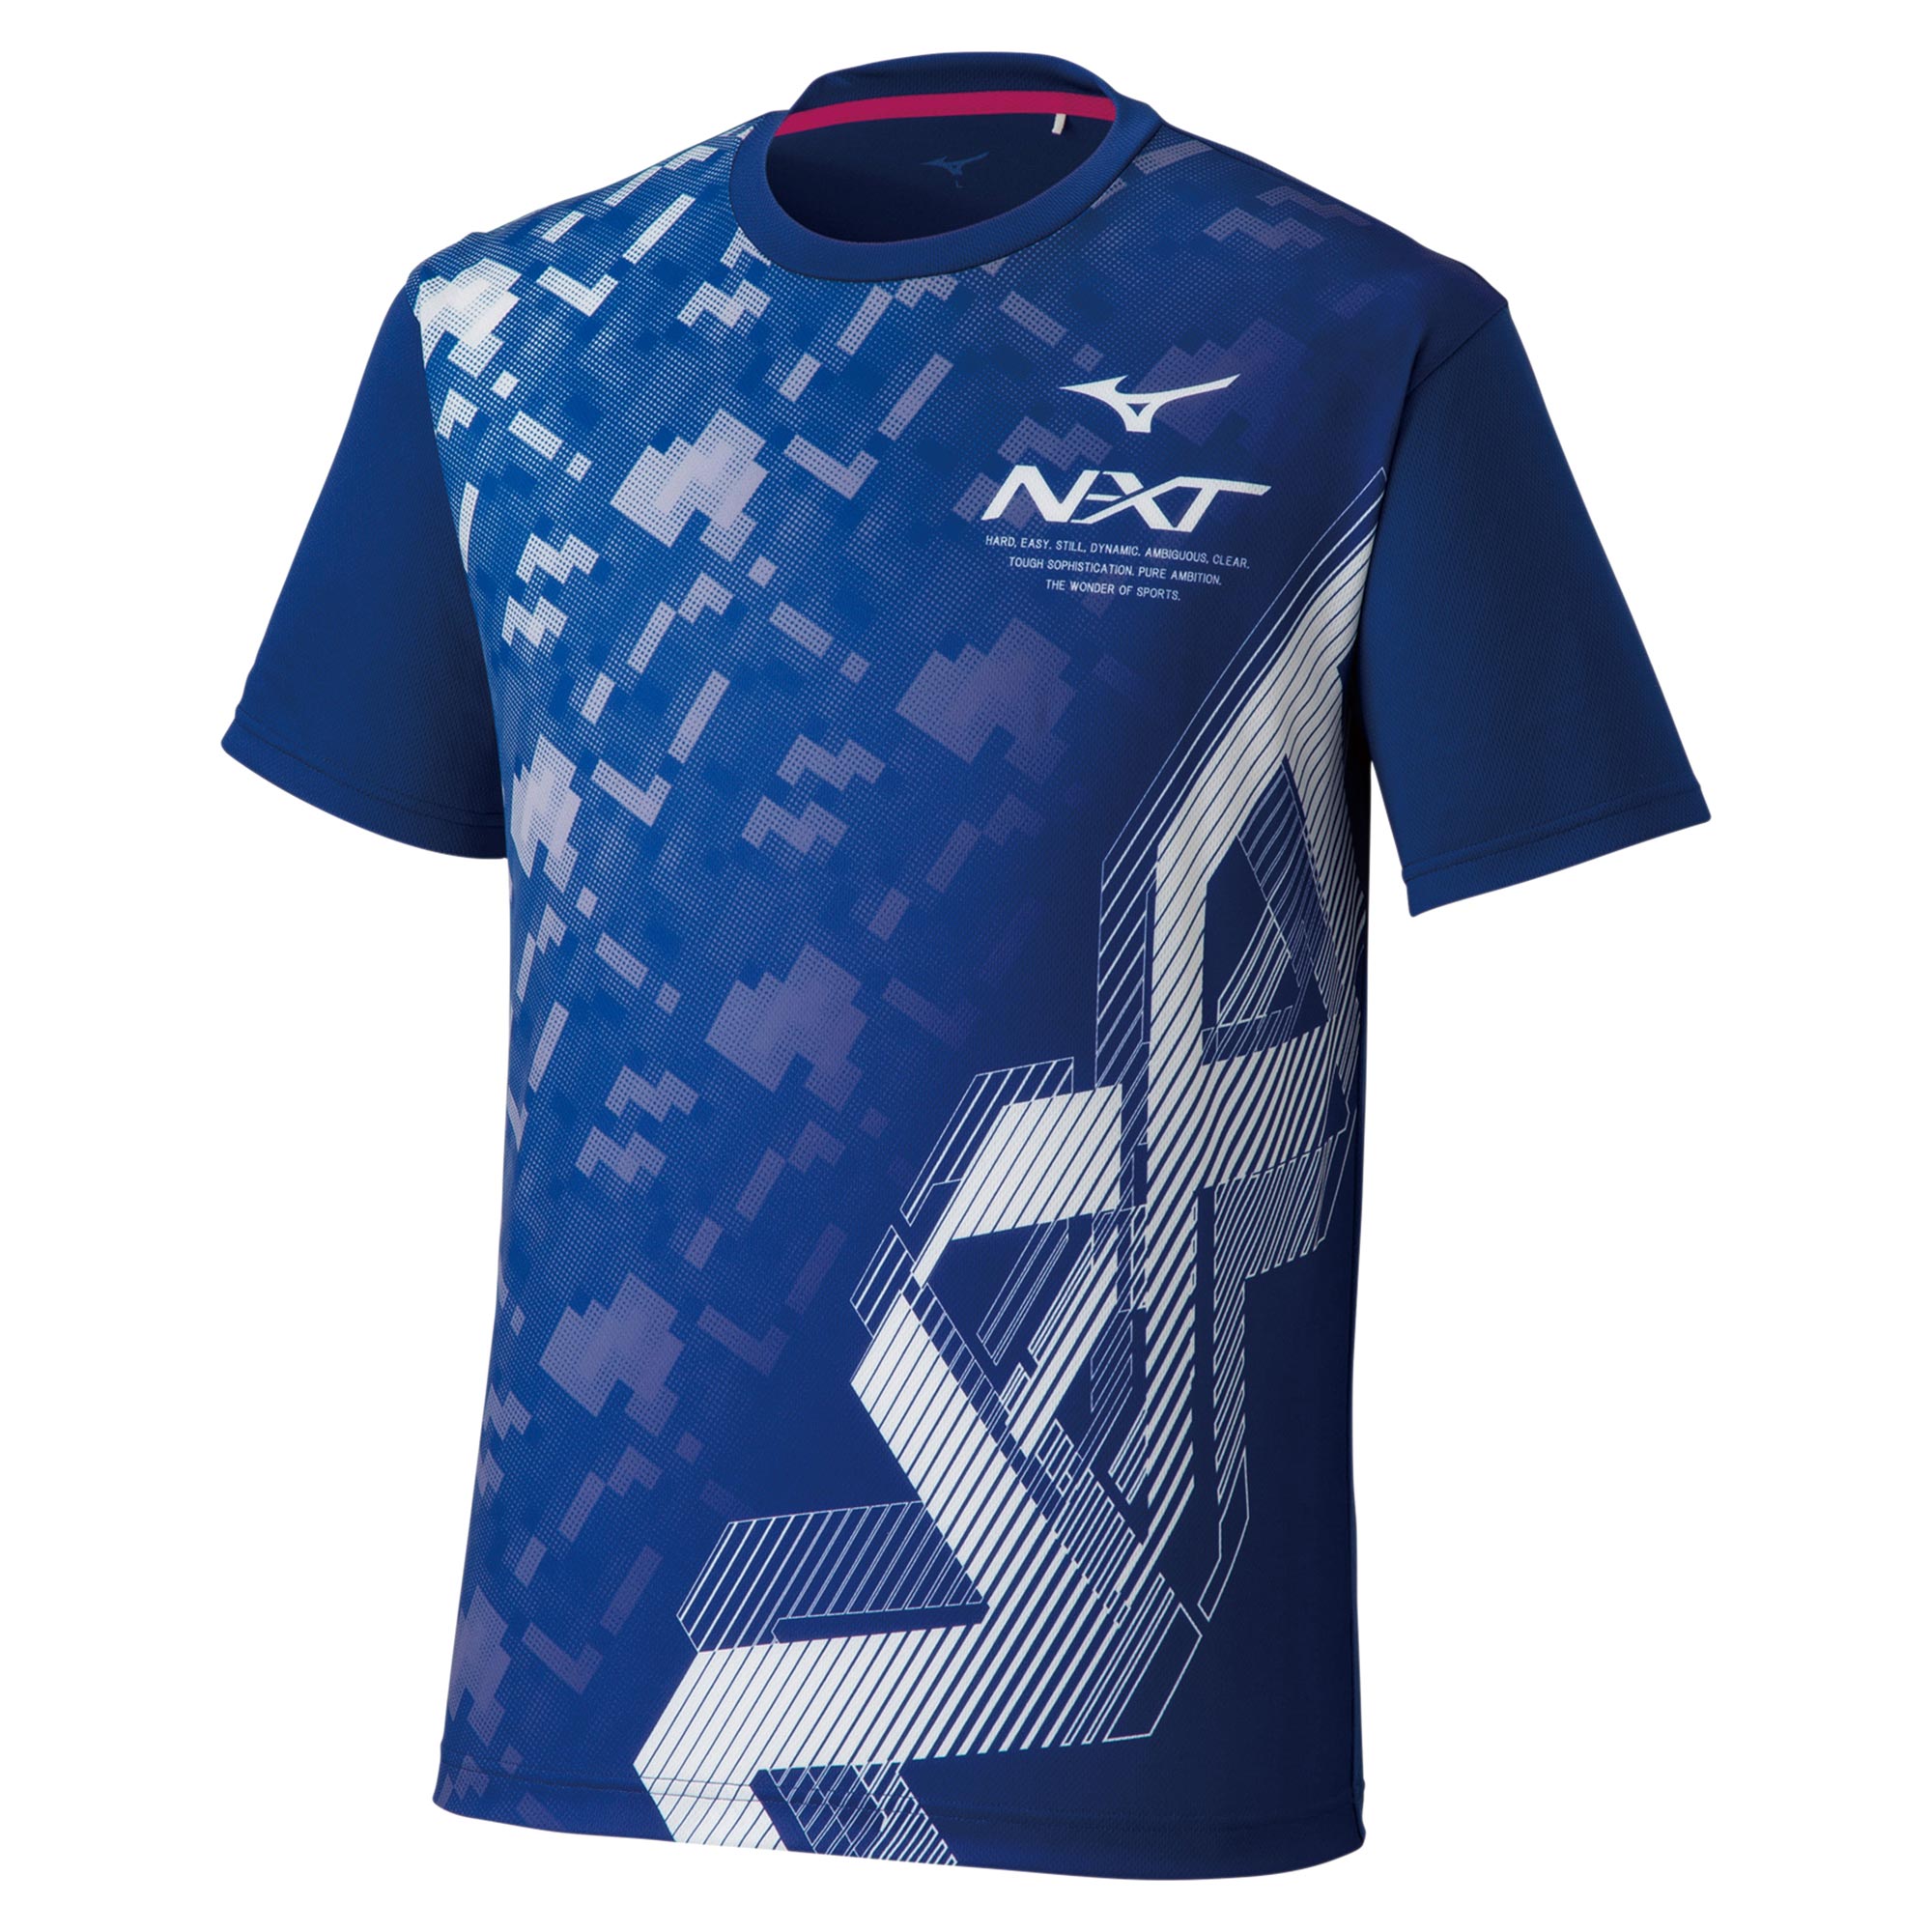 N-XT Tシャツ(ラケットスポーツ)[ユニセックス]|62JA1Z13|ウエア